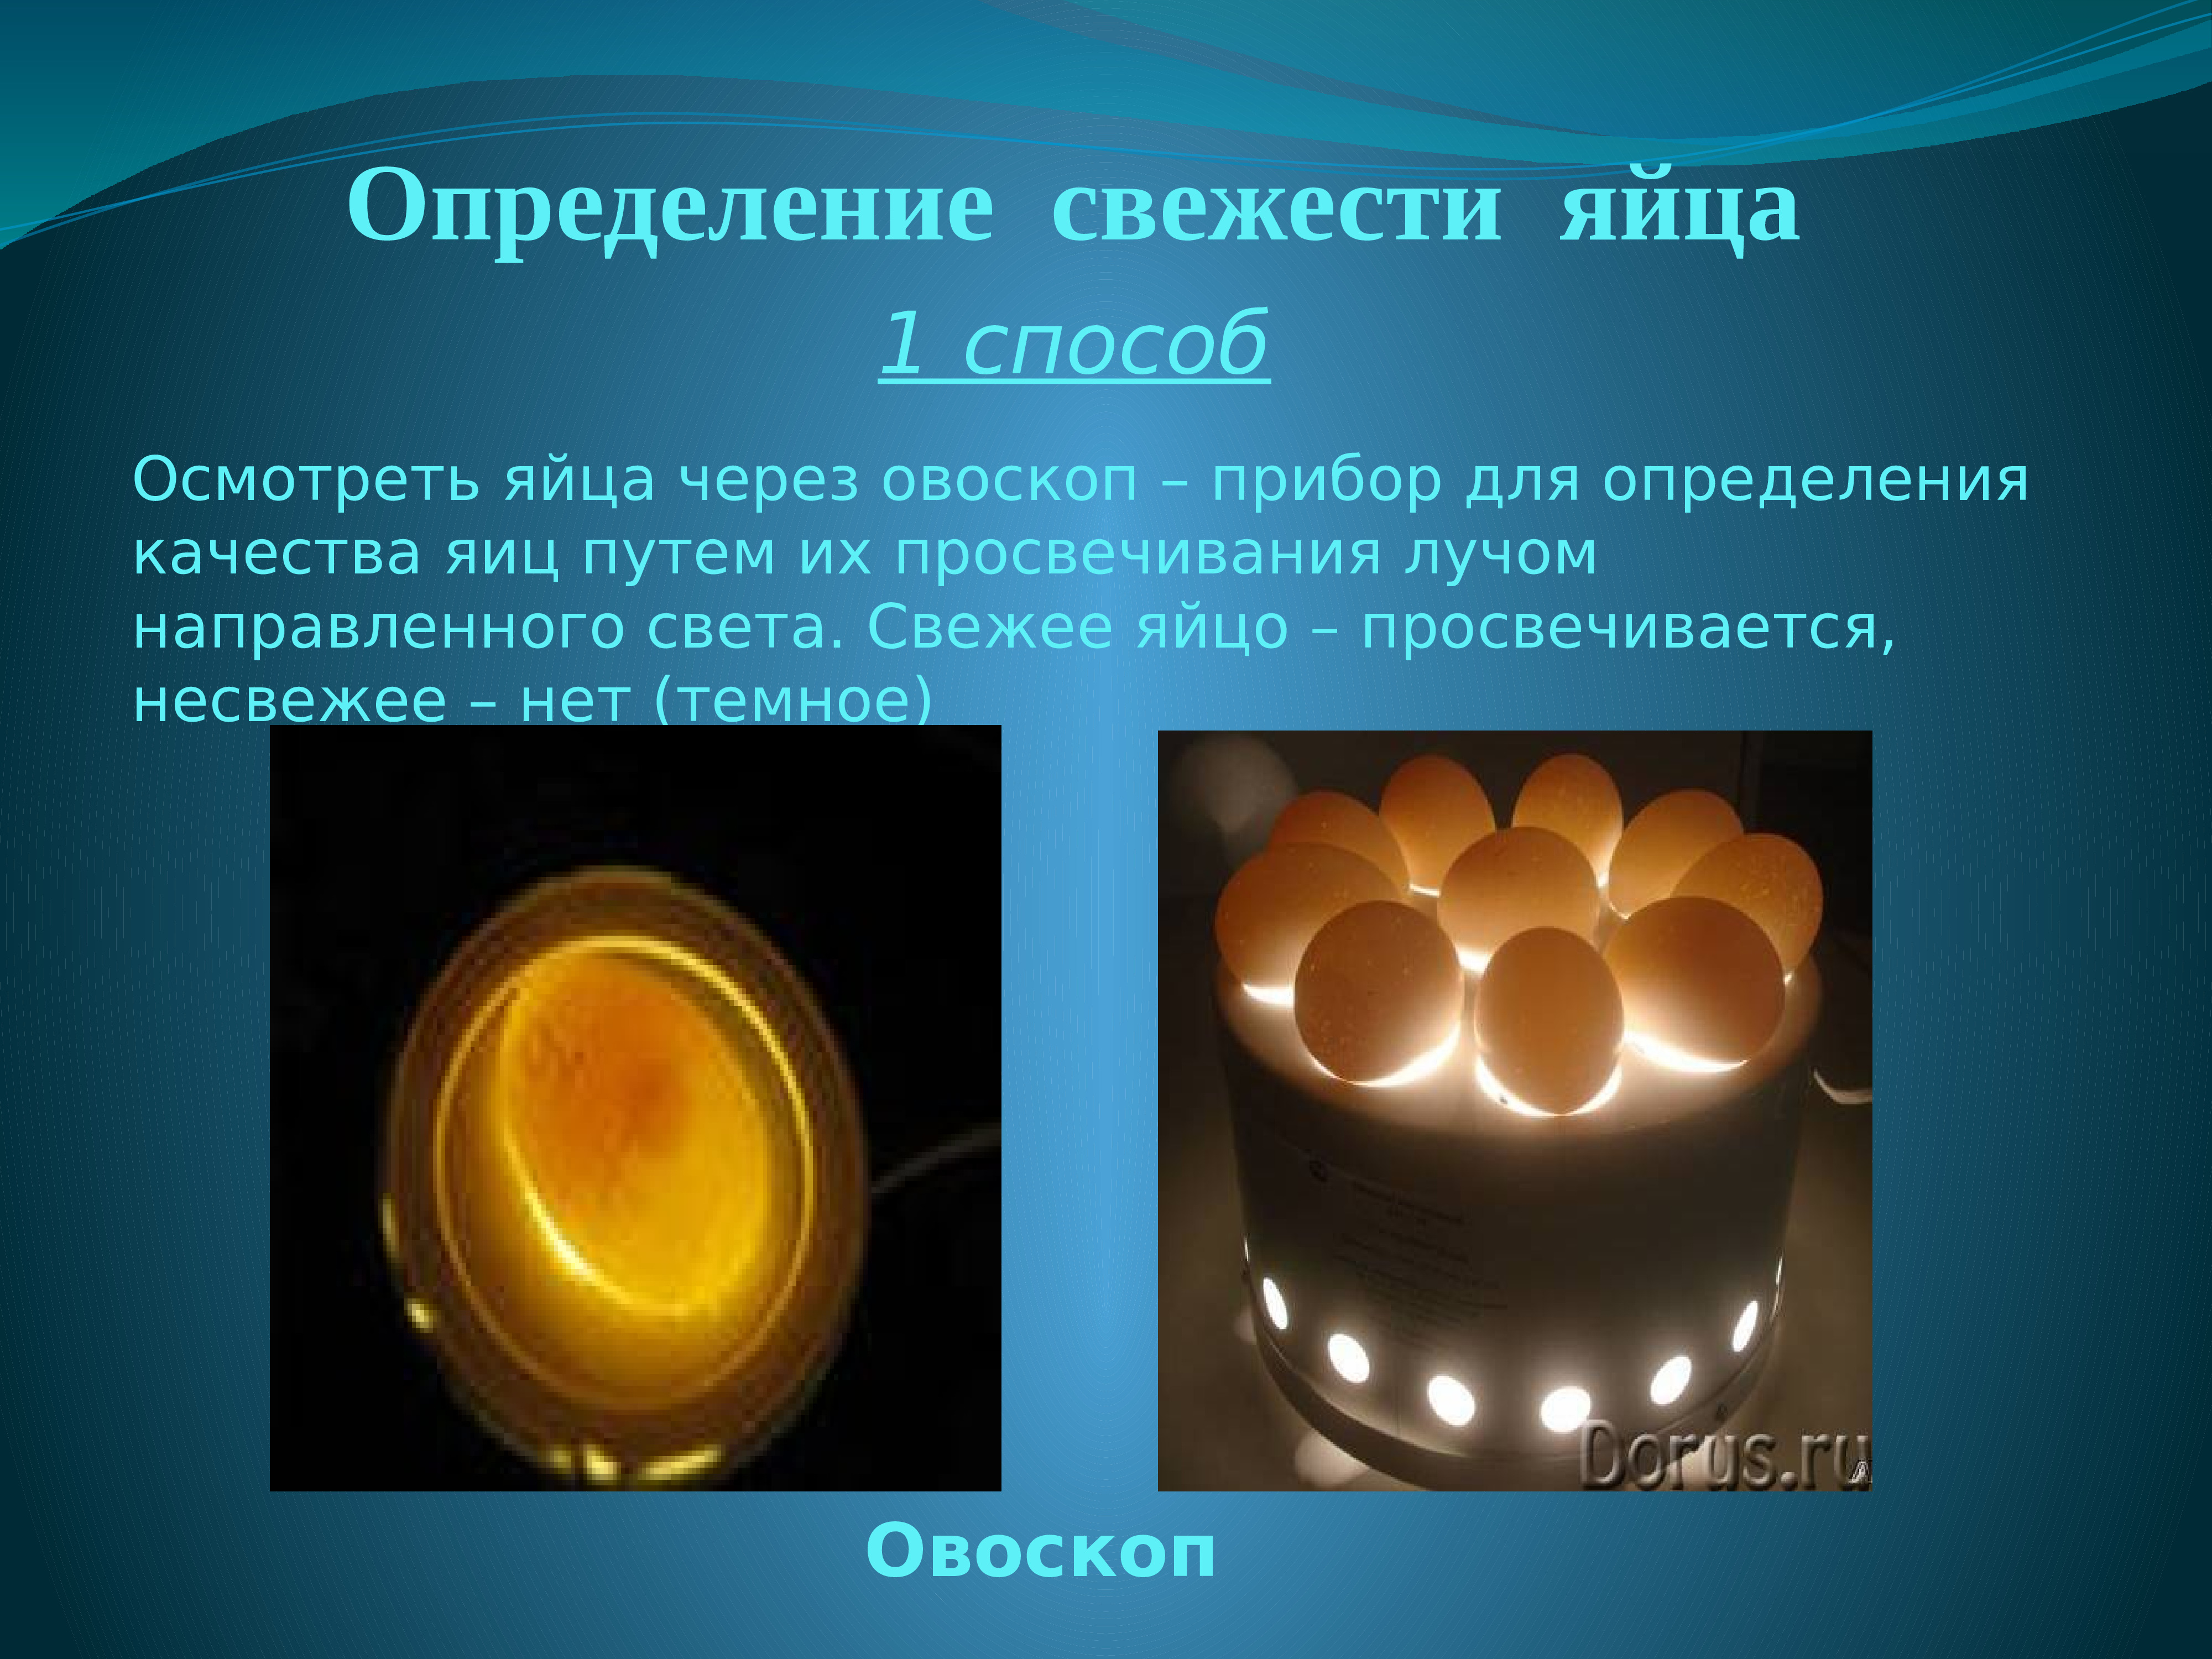 Оценка качества яиц. Определение свежести яиц. Прибор для определения свежести яиц. Овоскоп (прибор для определения качества яиц). Определение качества яиц.